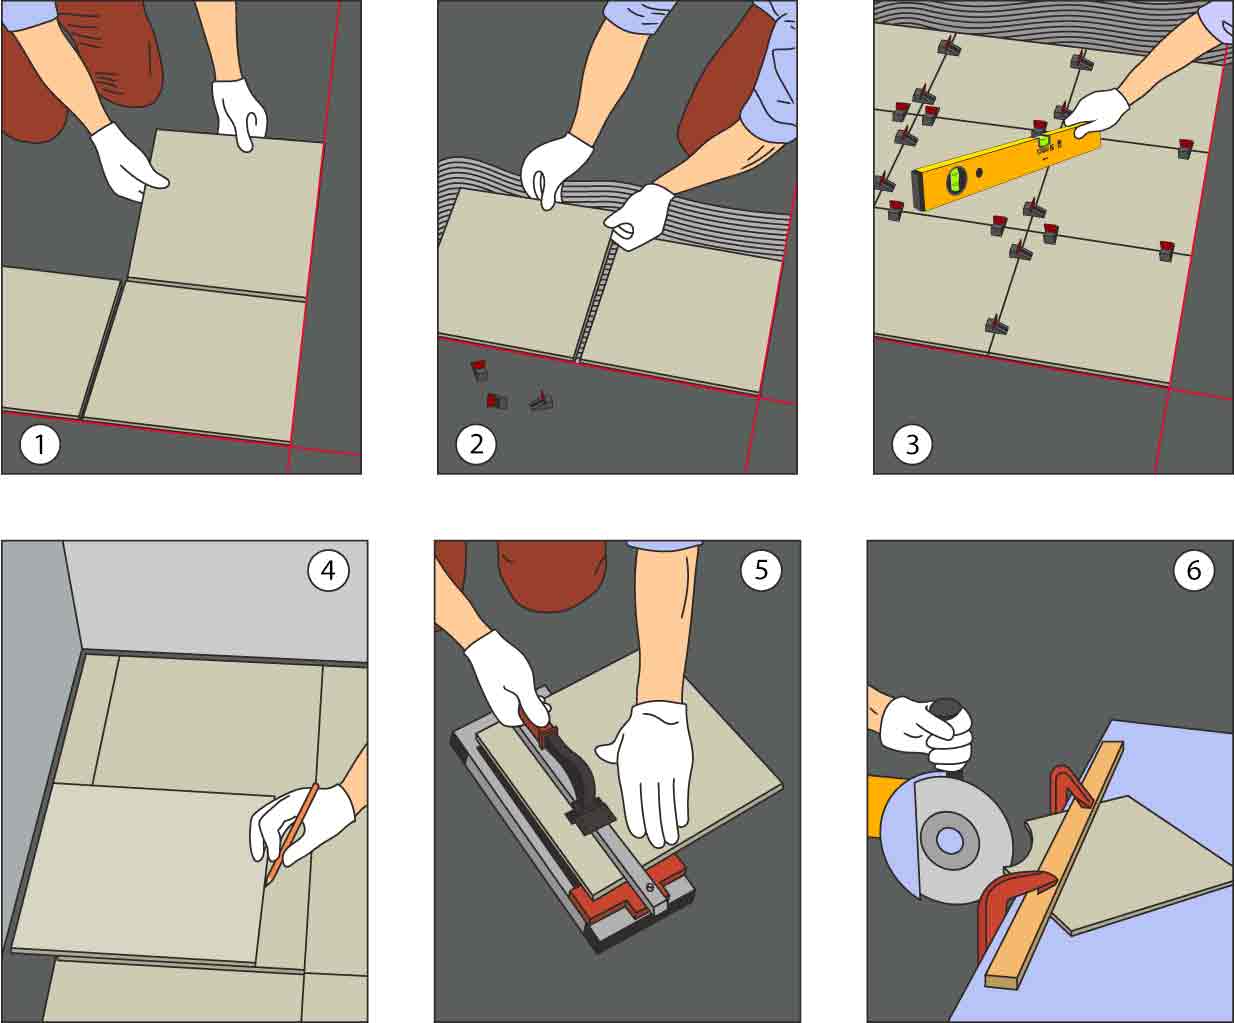 Как клеить плитку на разные типы поверхности